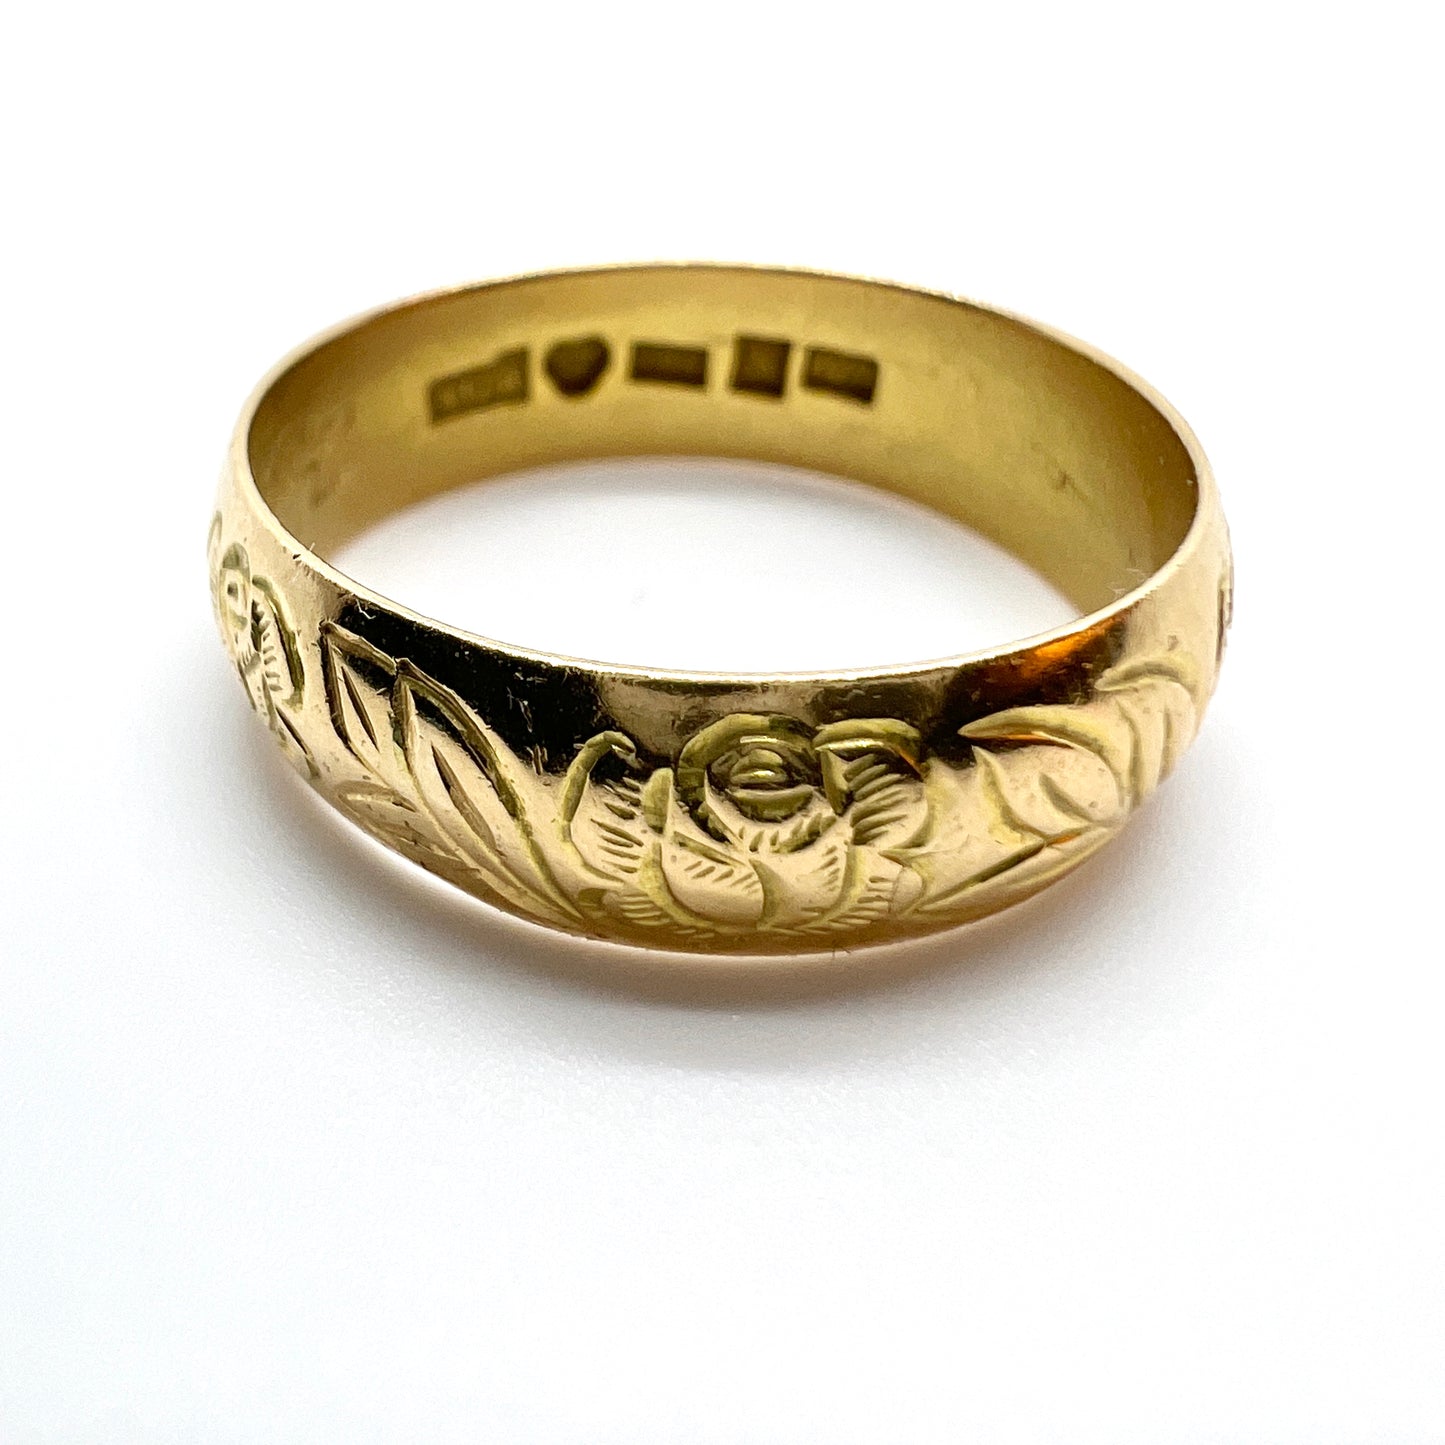 AG Åberg, Sweden 1907. Antique 18k Gold Rose Flower Wedding Band Ring.